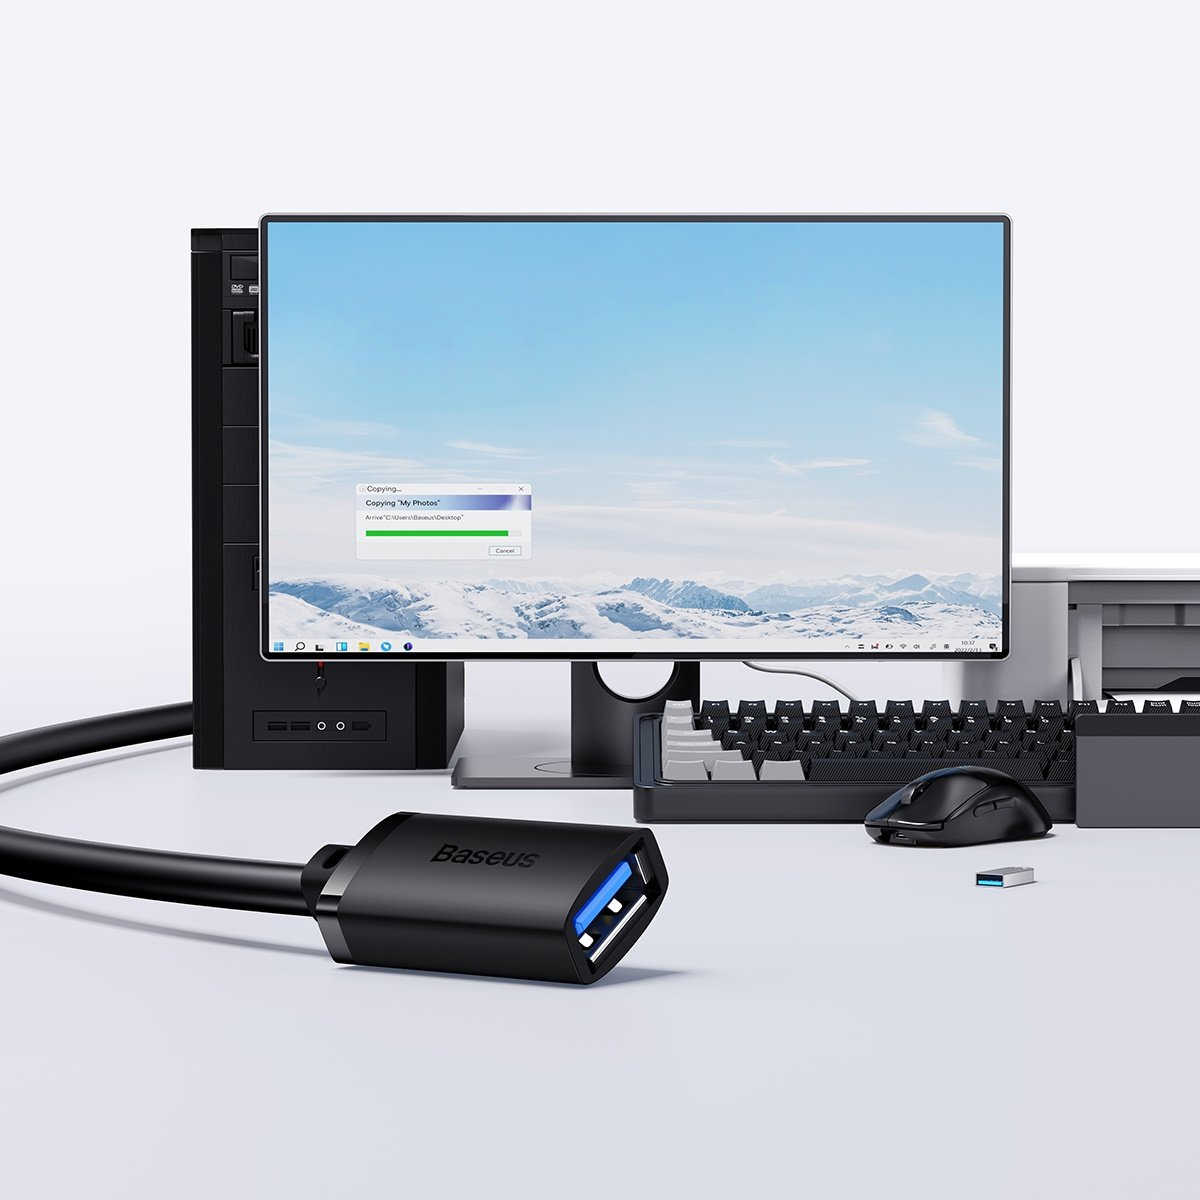 Baseus AirJoy Series USB-A 3.0 Extension Cable 5m